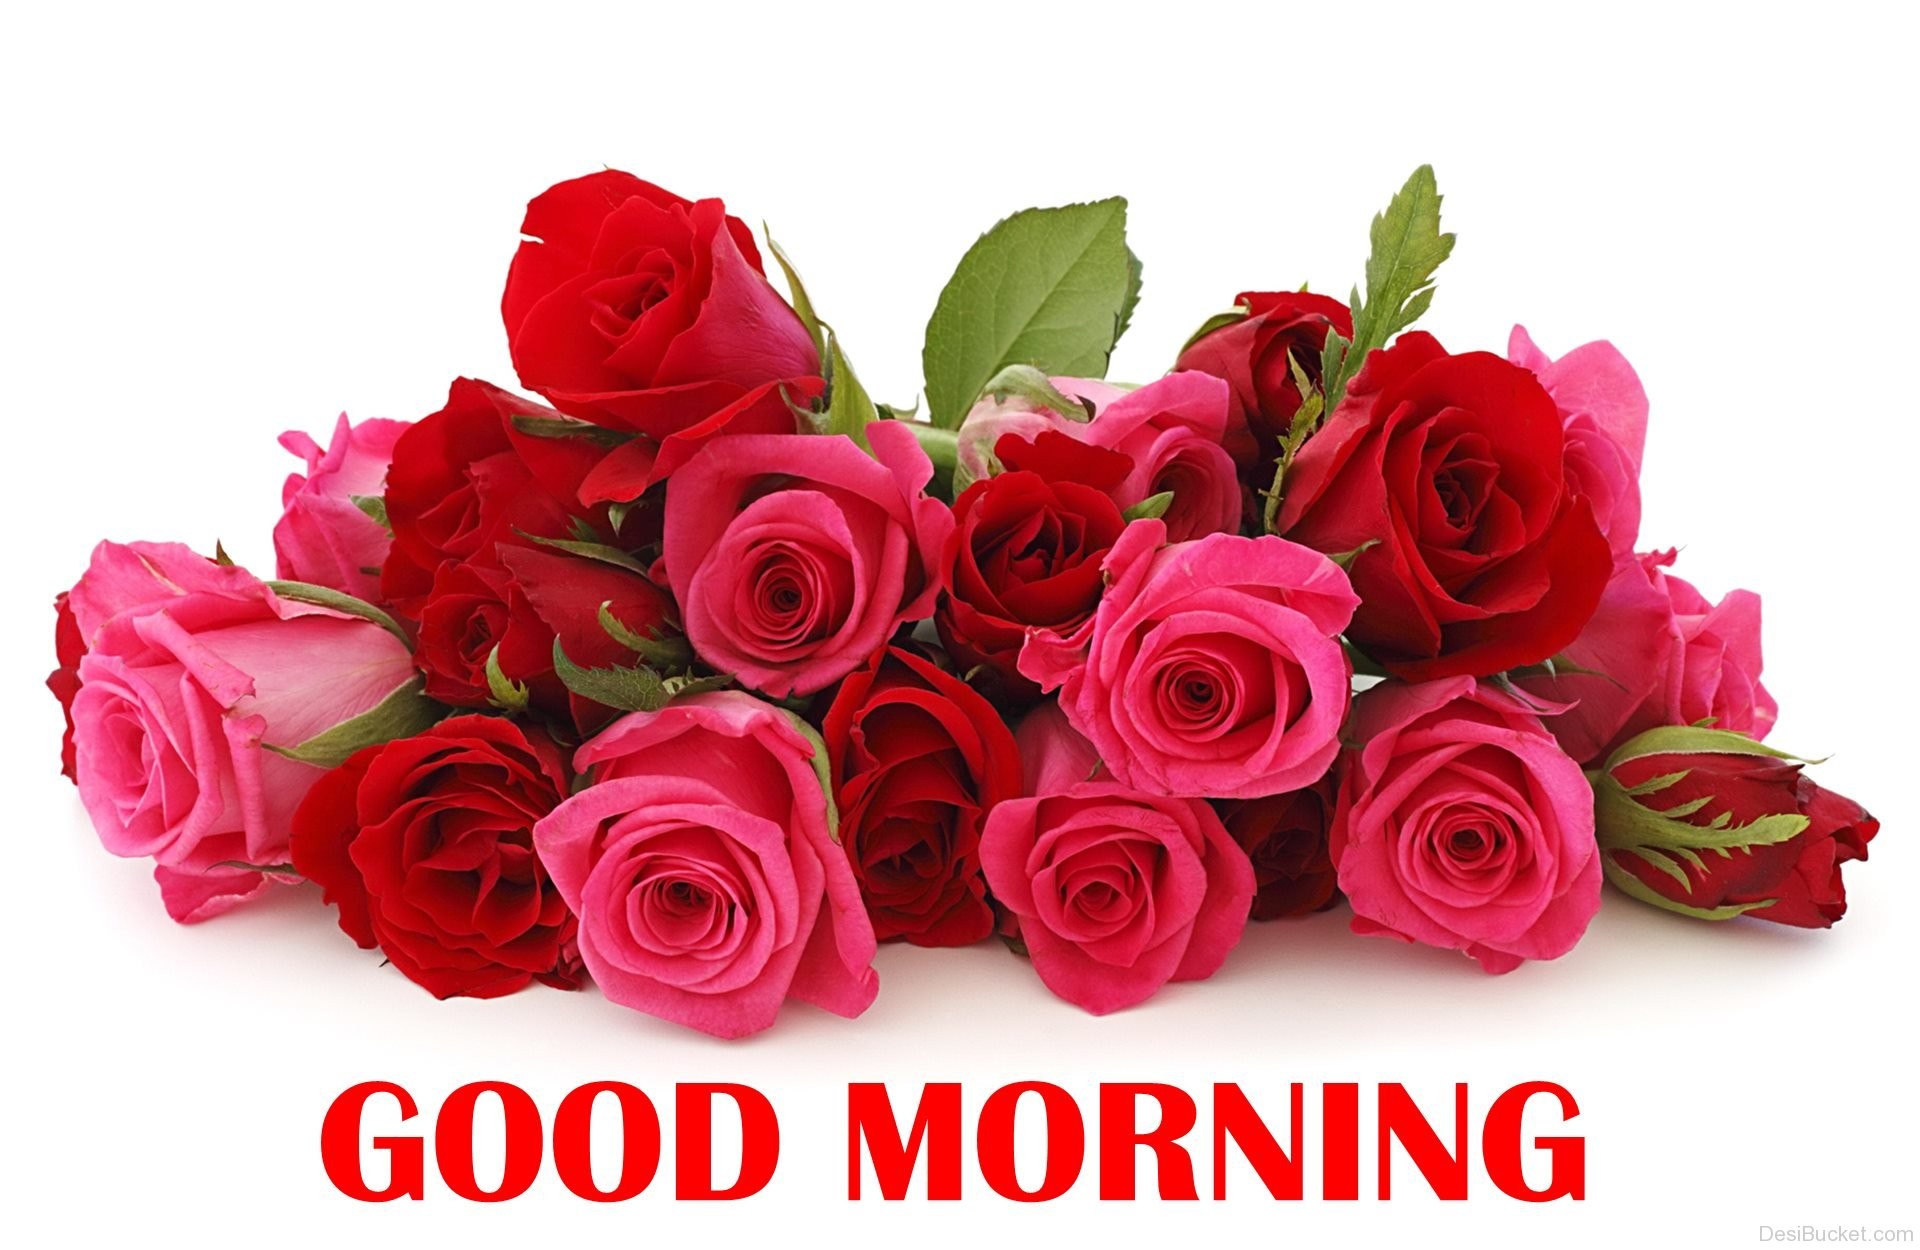 Chào buổi sáng với hình ảnh hoa hồng tươi mới là một cách tuyệt vời để bắt đầu một ngày mới đầy năng lượng. Xem hình ảnh này để cảm nhận vẻ đẹp tinh tế của từng cánh hoa hồng.